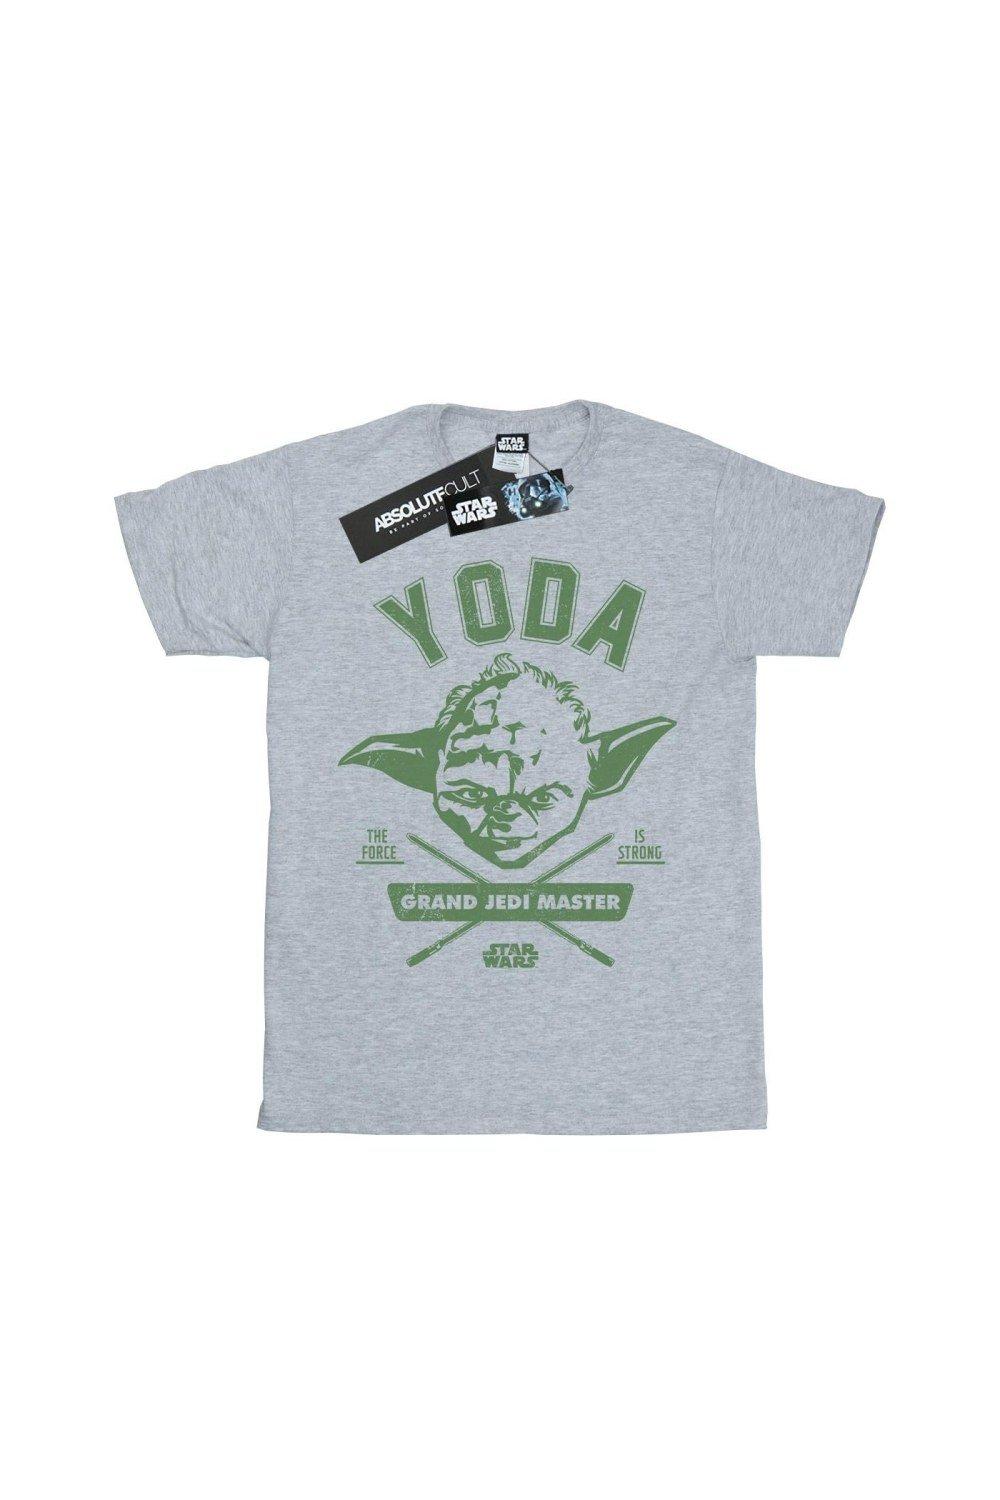 цена Университетская футболка Йоды Star Wars, серый